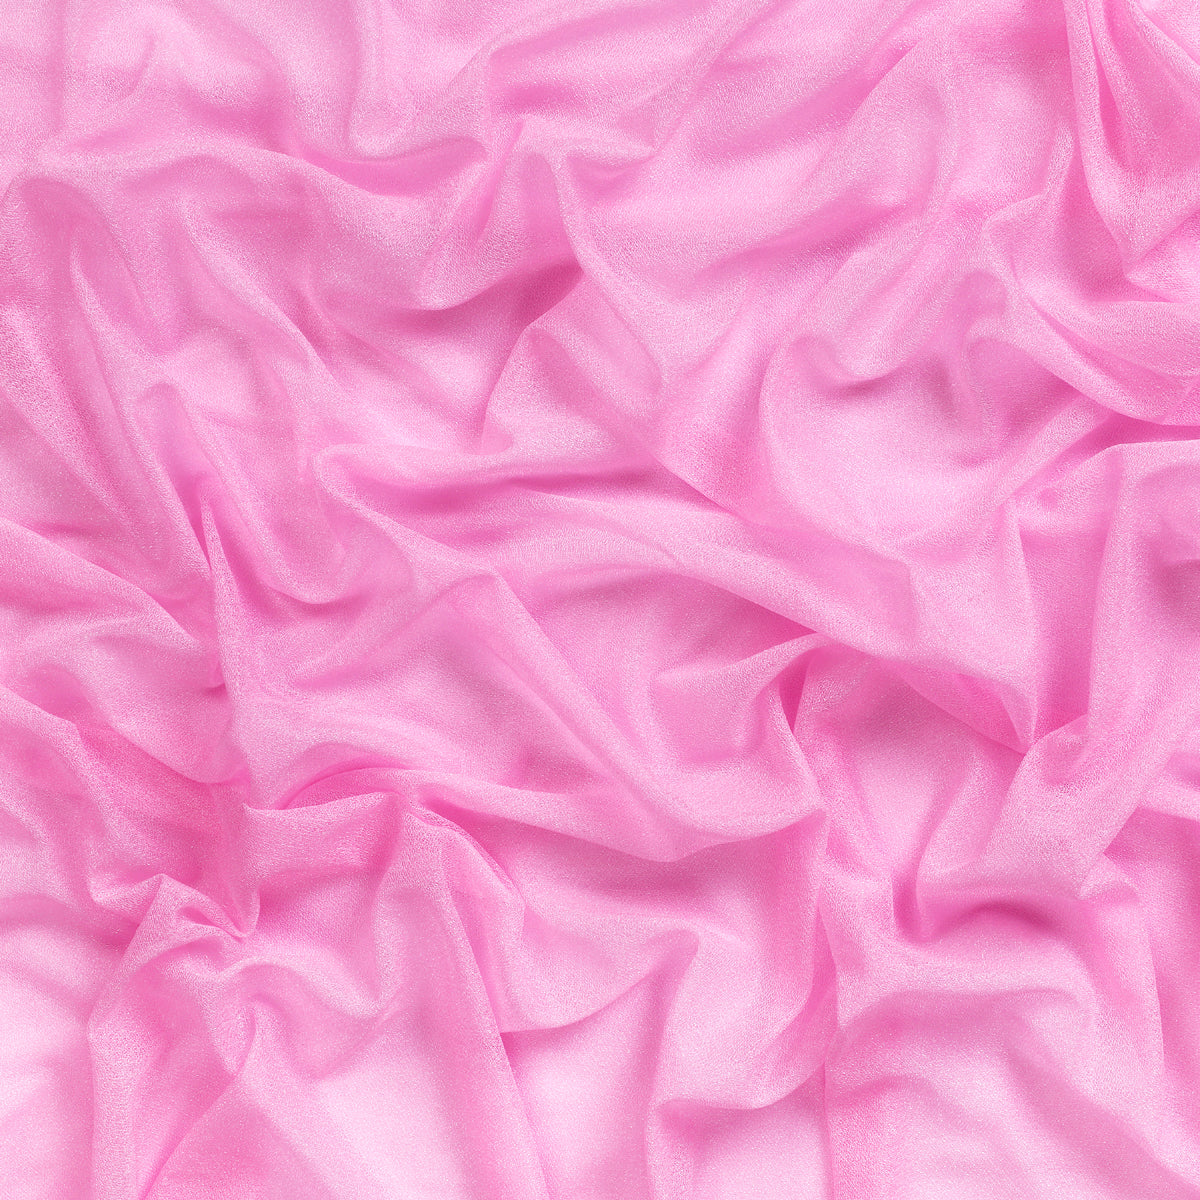 Bubblegum Pink,9cb2f89d-56af-4471-88d9-34629476926d